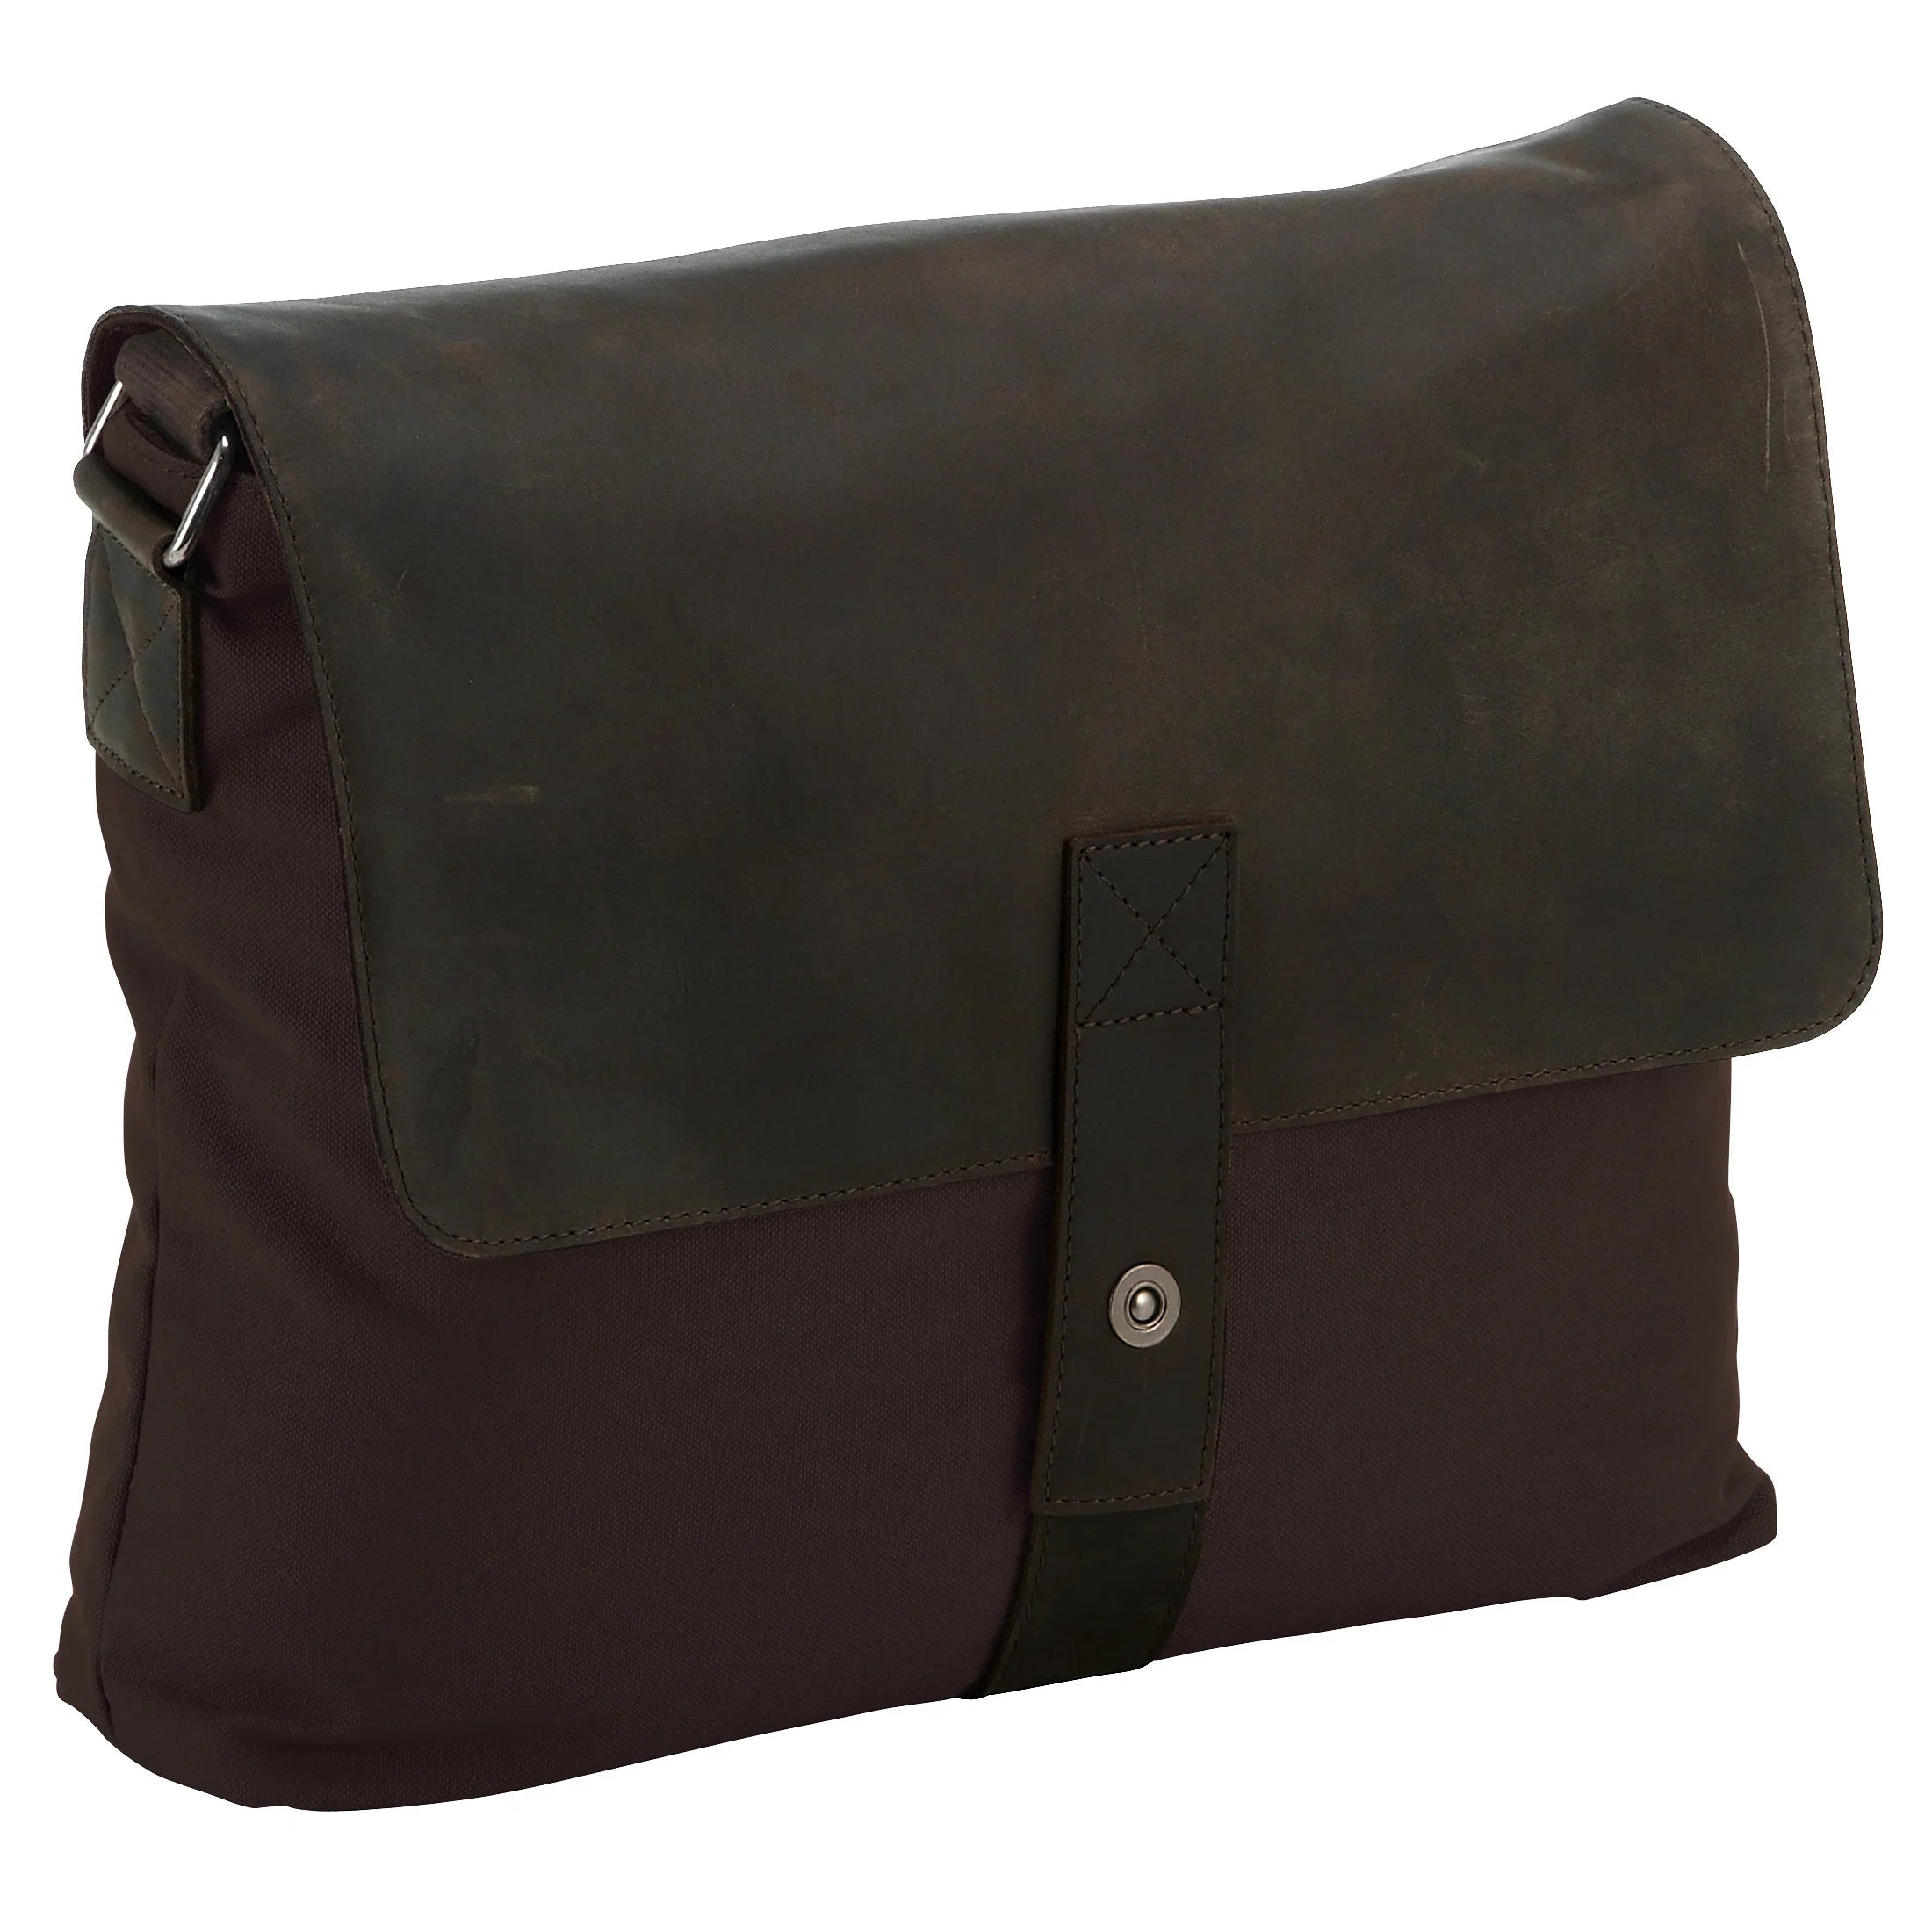 Harolds Waxcan messenger bag 37 cm - brown